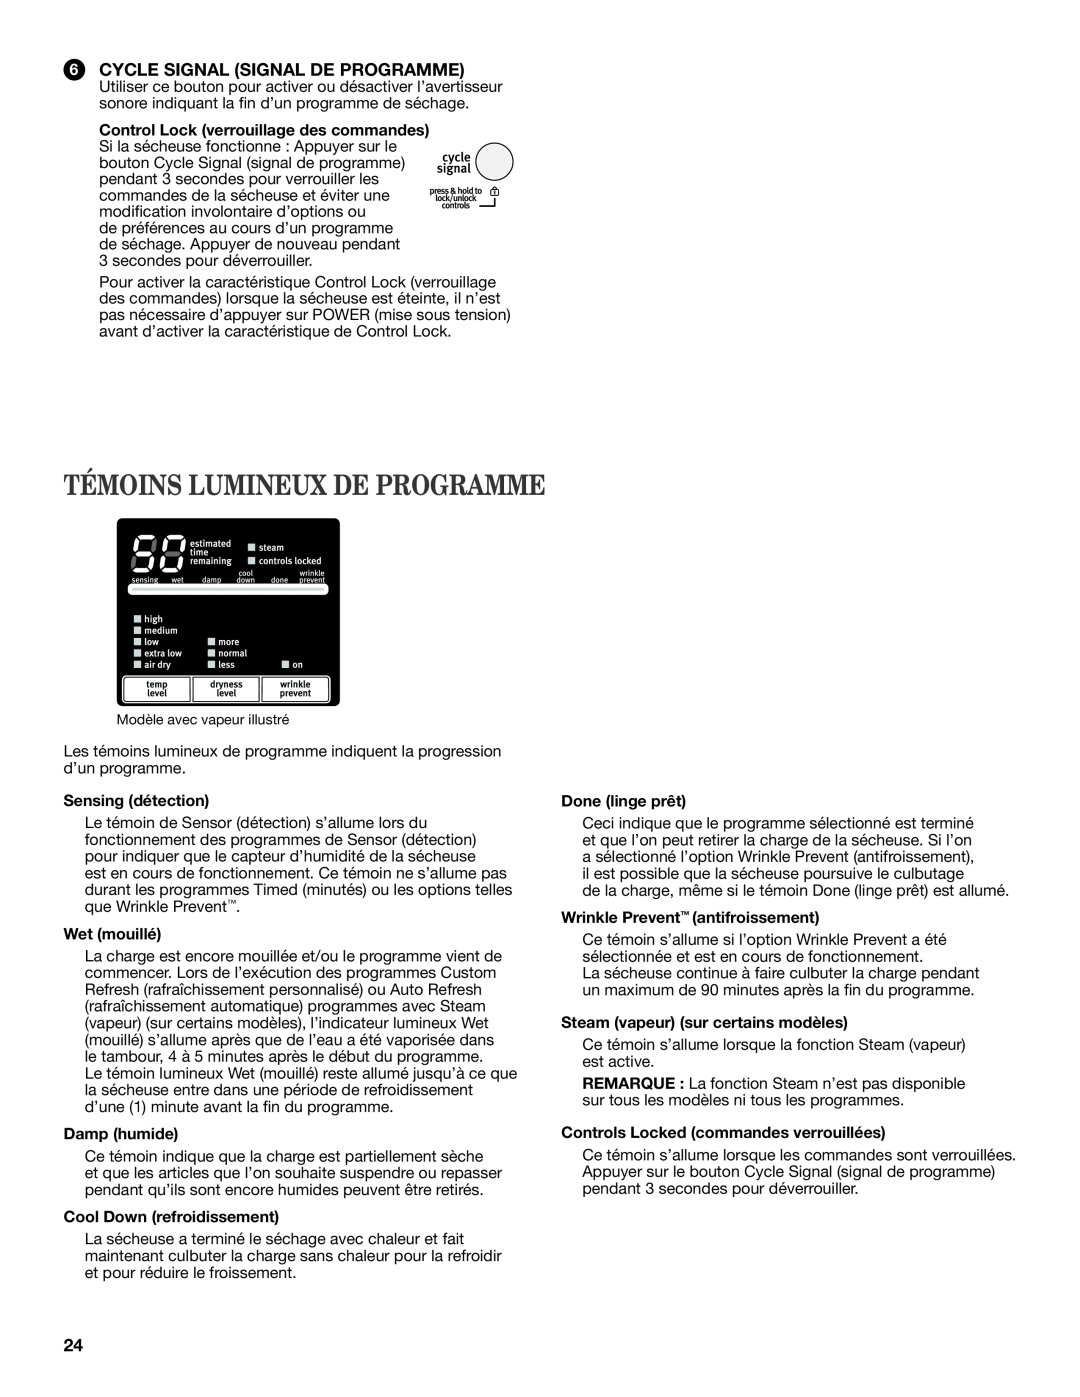 Maytag W10385090A manual Témoins Lumineux De Programme, Cycle Signal Signal De Programme, Sensing détection, Wet mouillé 